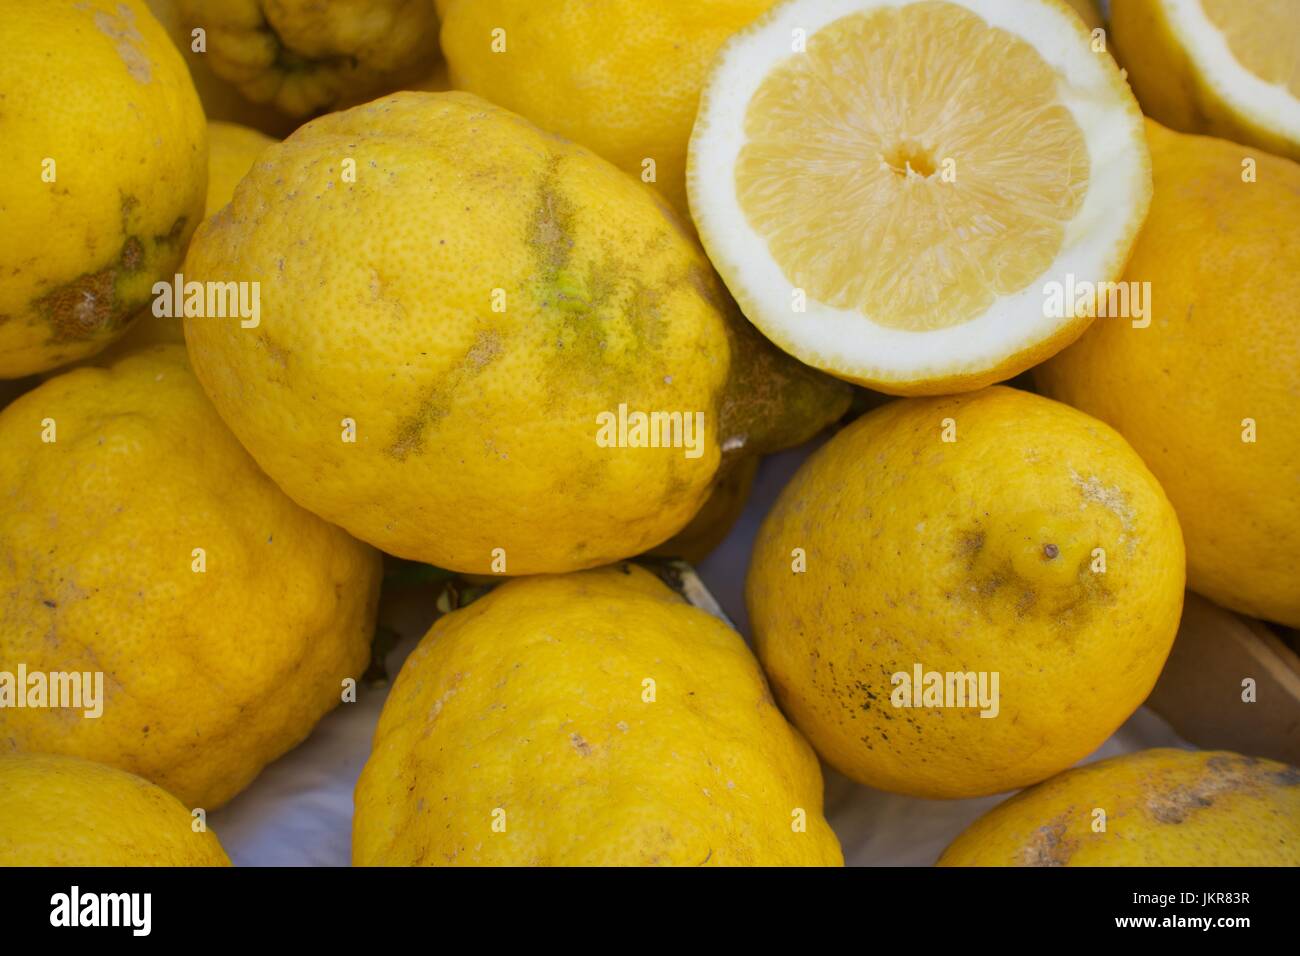 Lemons of the Amalfi Coast Stock Photo